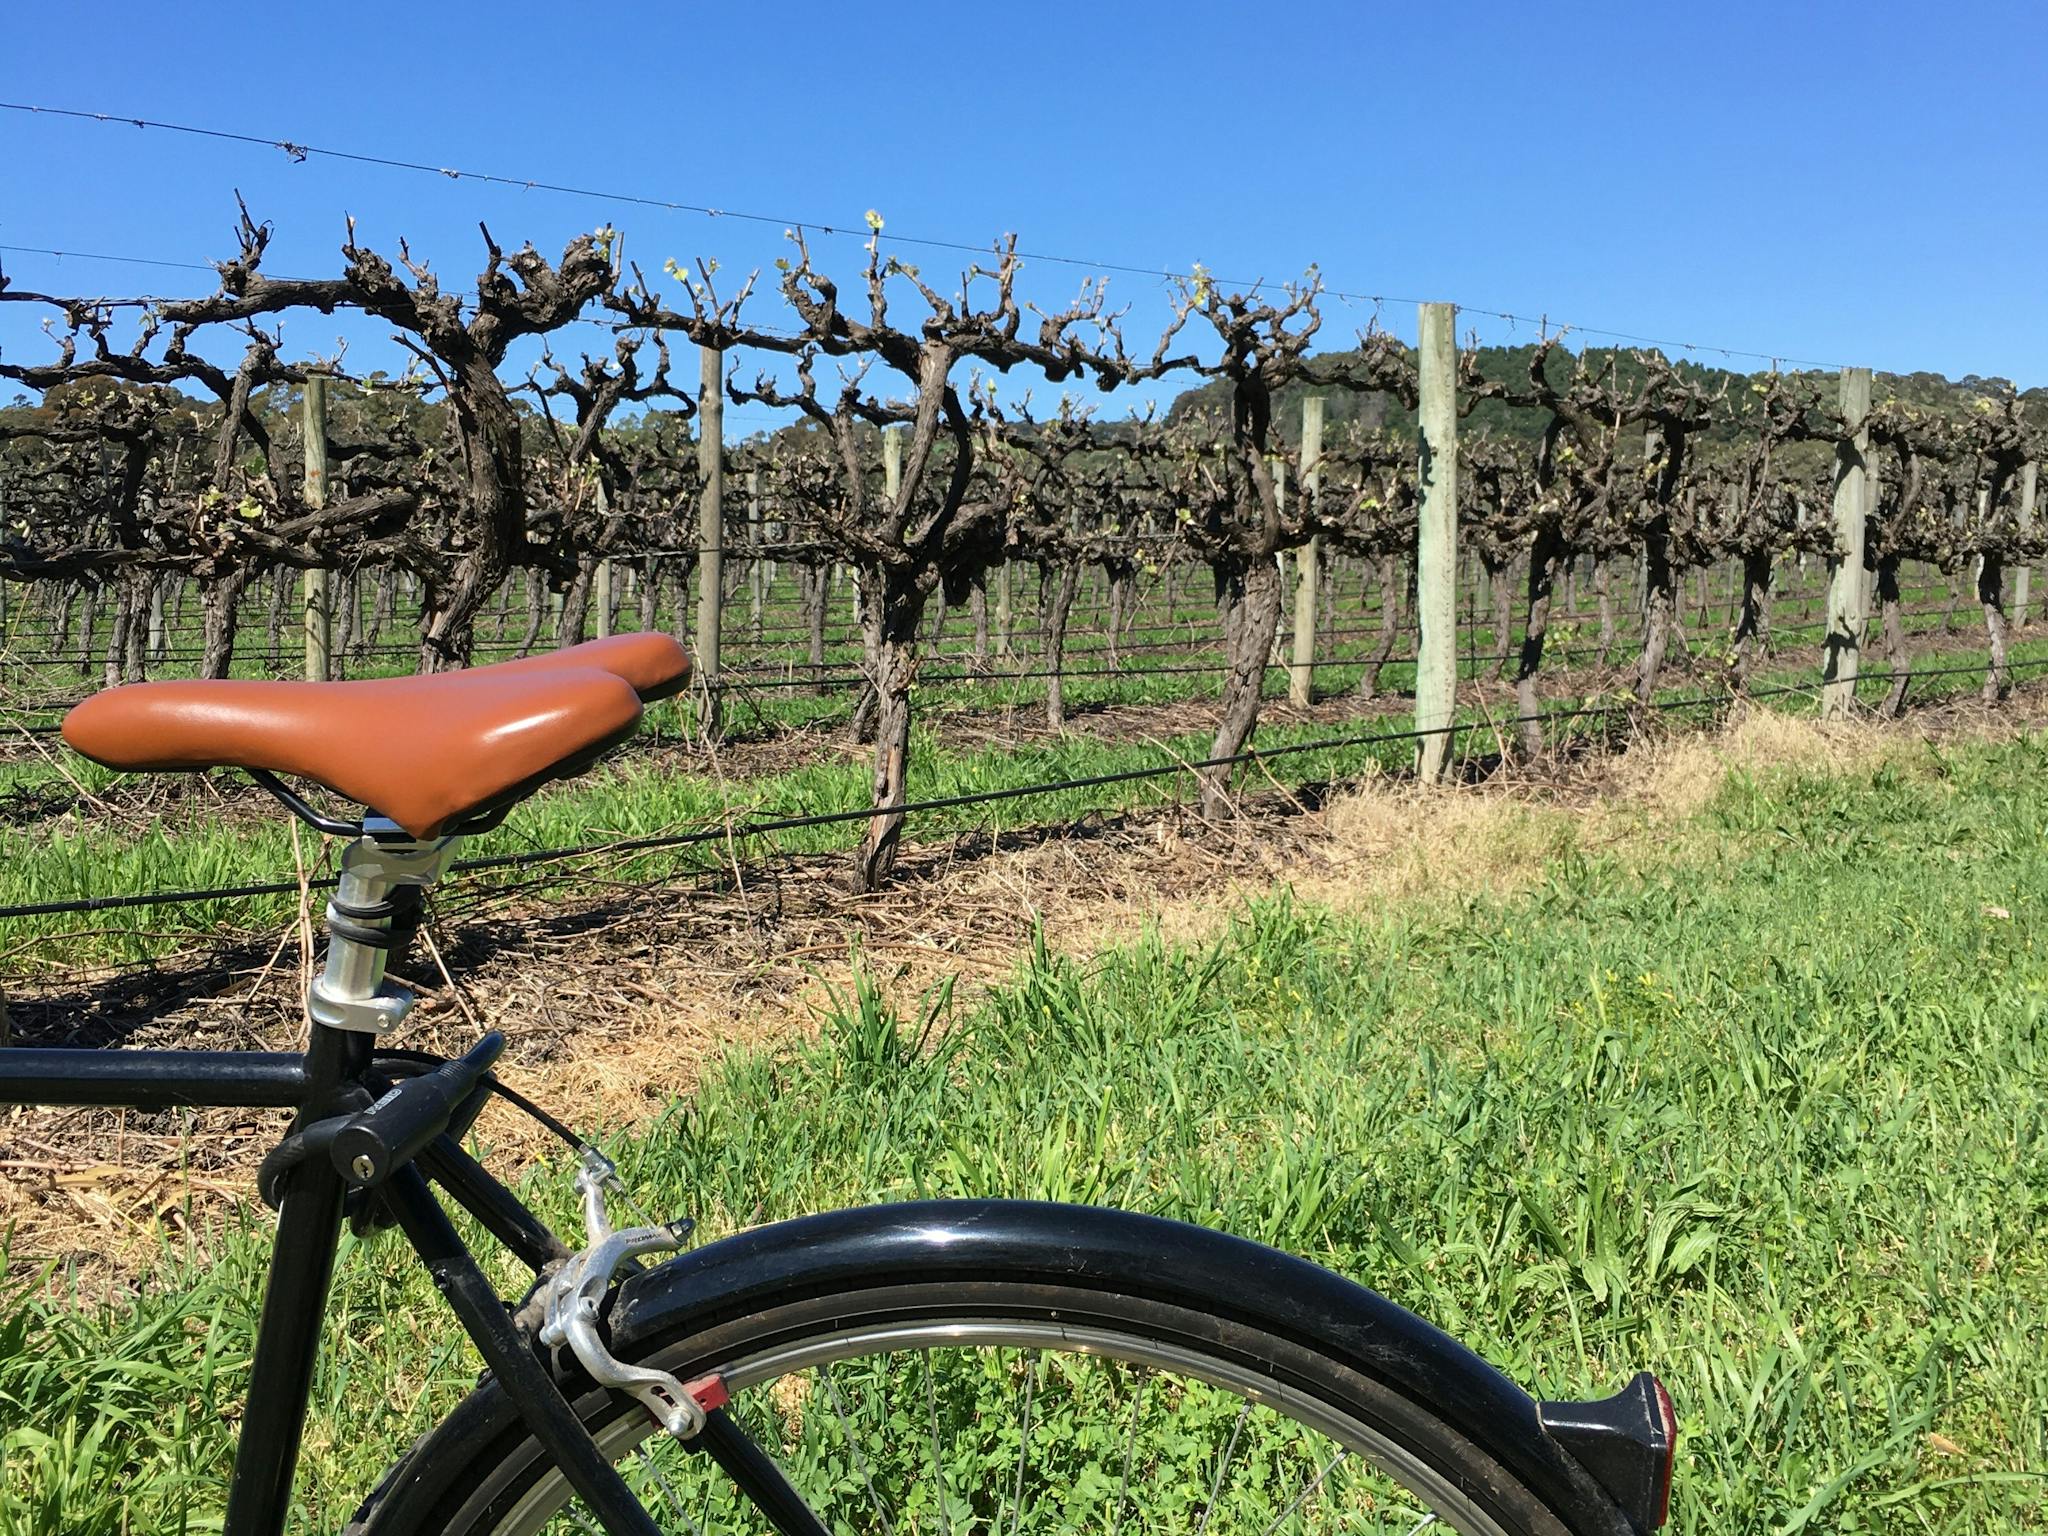 Bike in front of vineyards